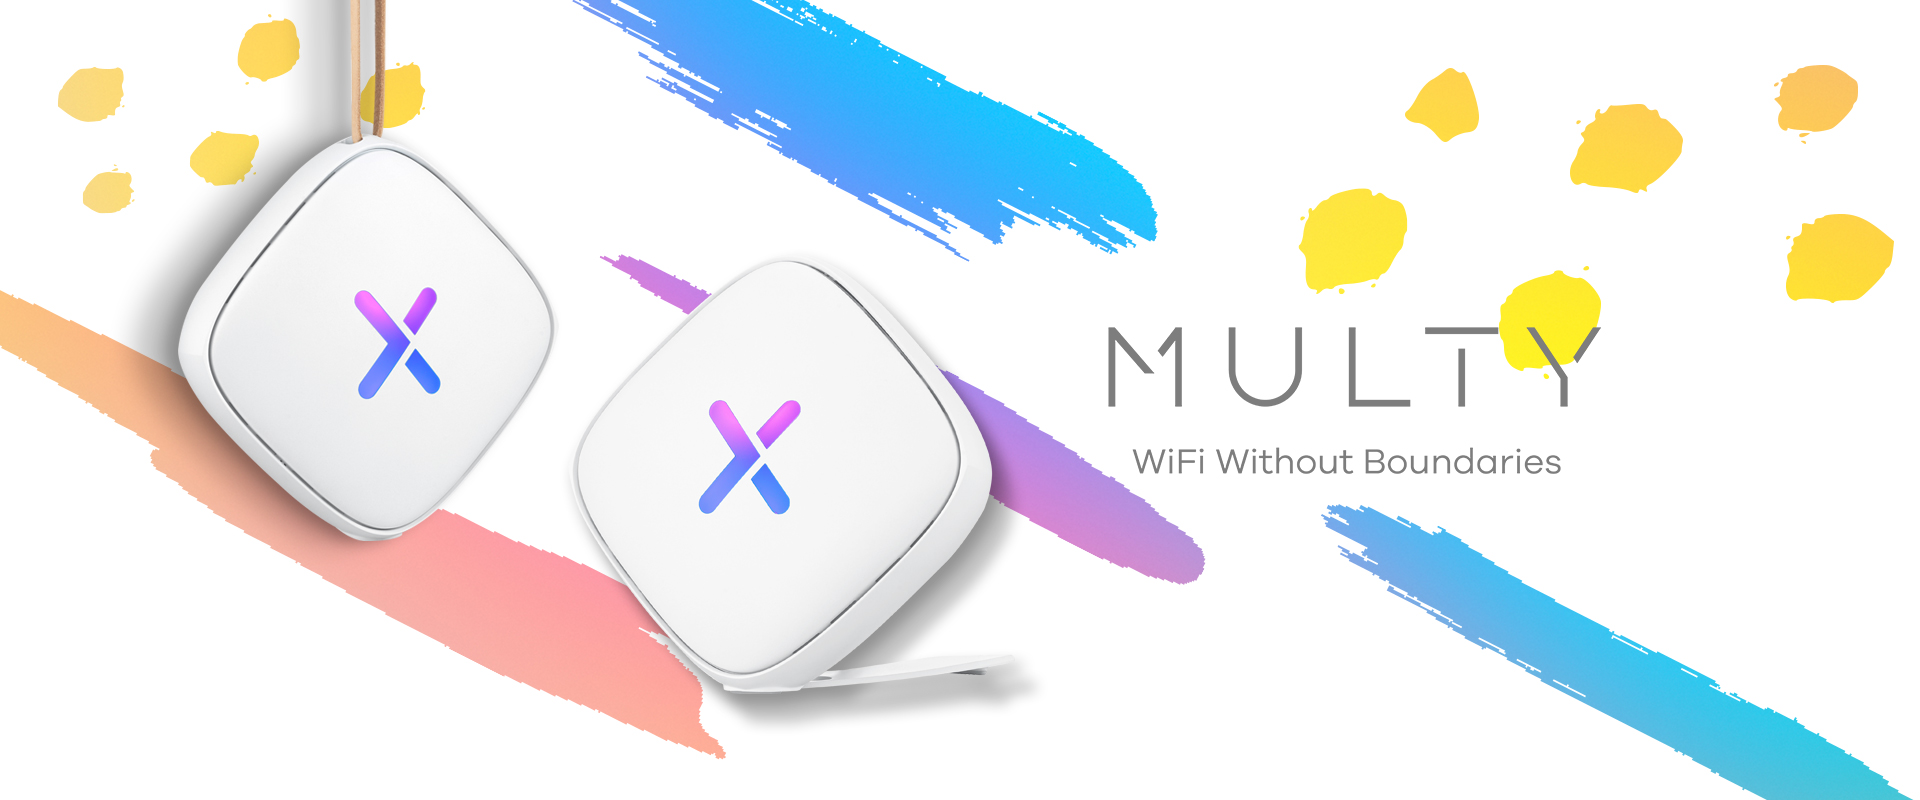 primage multyu 1 Zyxel เปิดตัวโซลูชั่น Mesh WiFi ใหม่ ที่ตอบโจทย์สำหรับผู้ใช้งานรุ่นใหม่